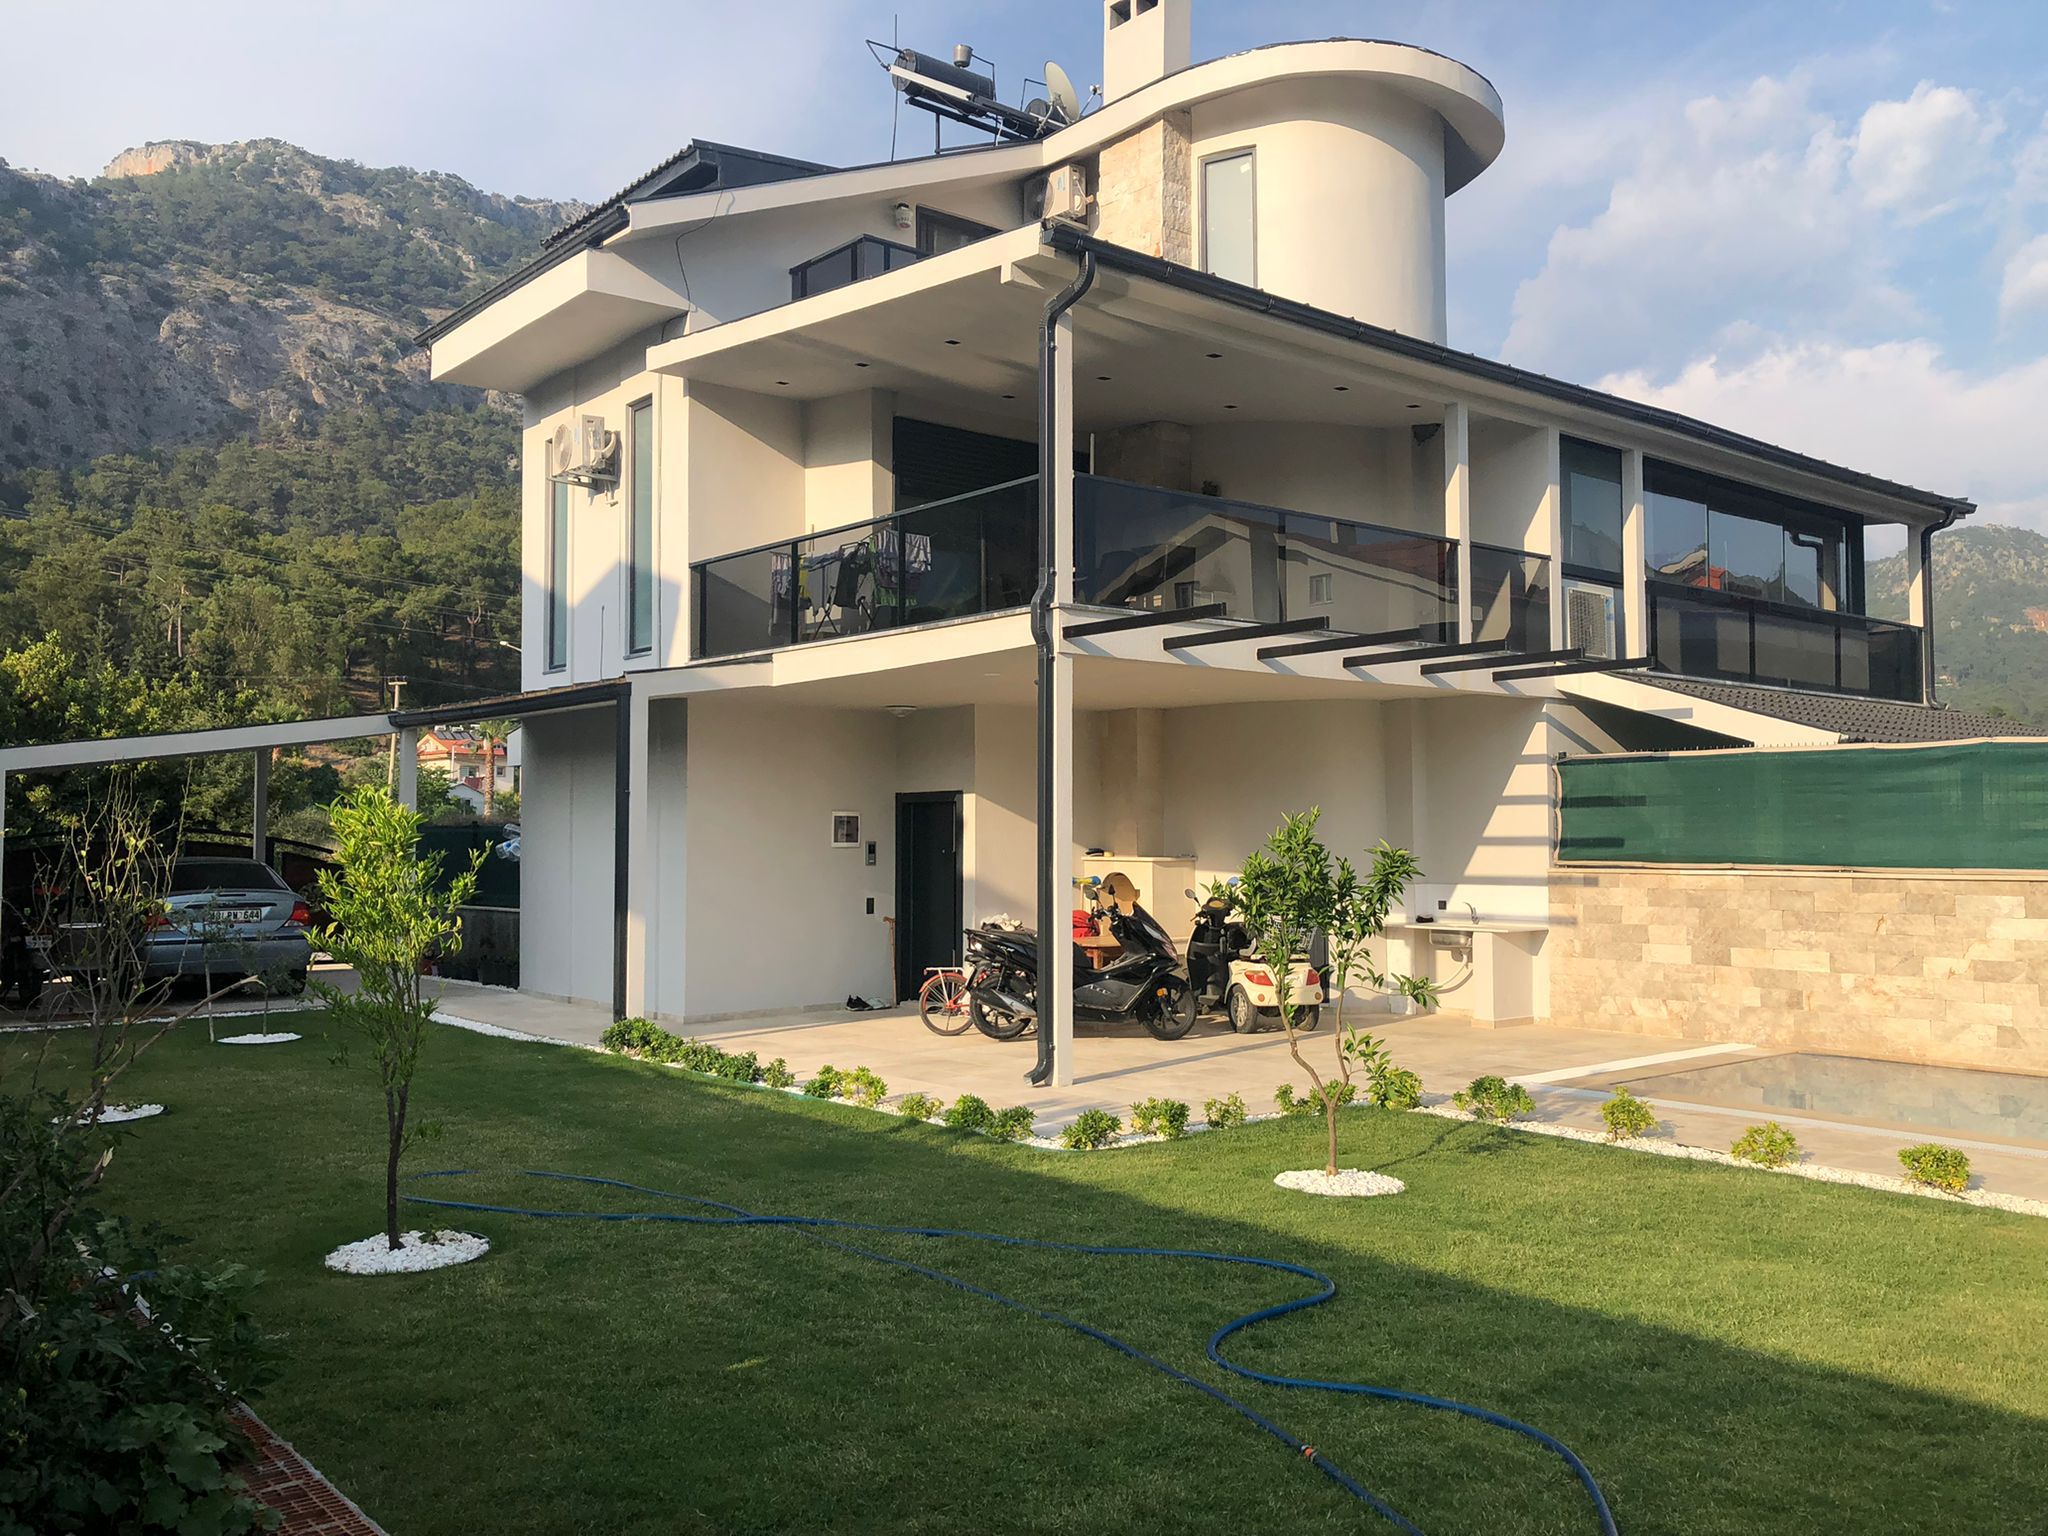 3 Bedrooms Villa for Rent in Gocek Long Term